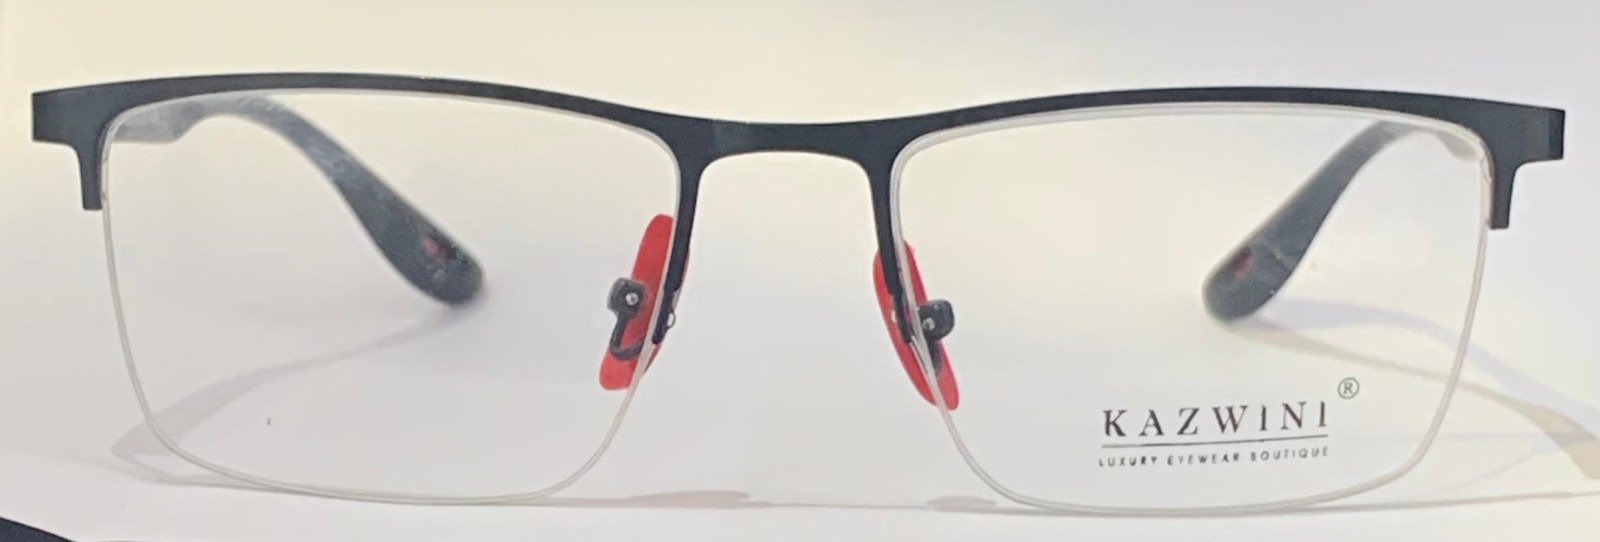 Armação Kazwini para Óculos de Grau - Metal e Nylon Leve e Resistente -  Ótica Clarity